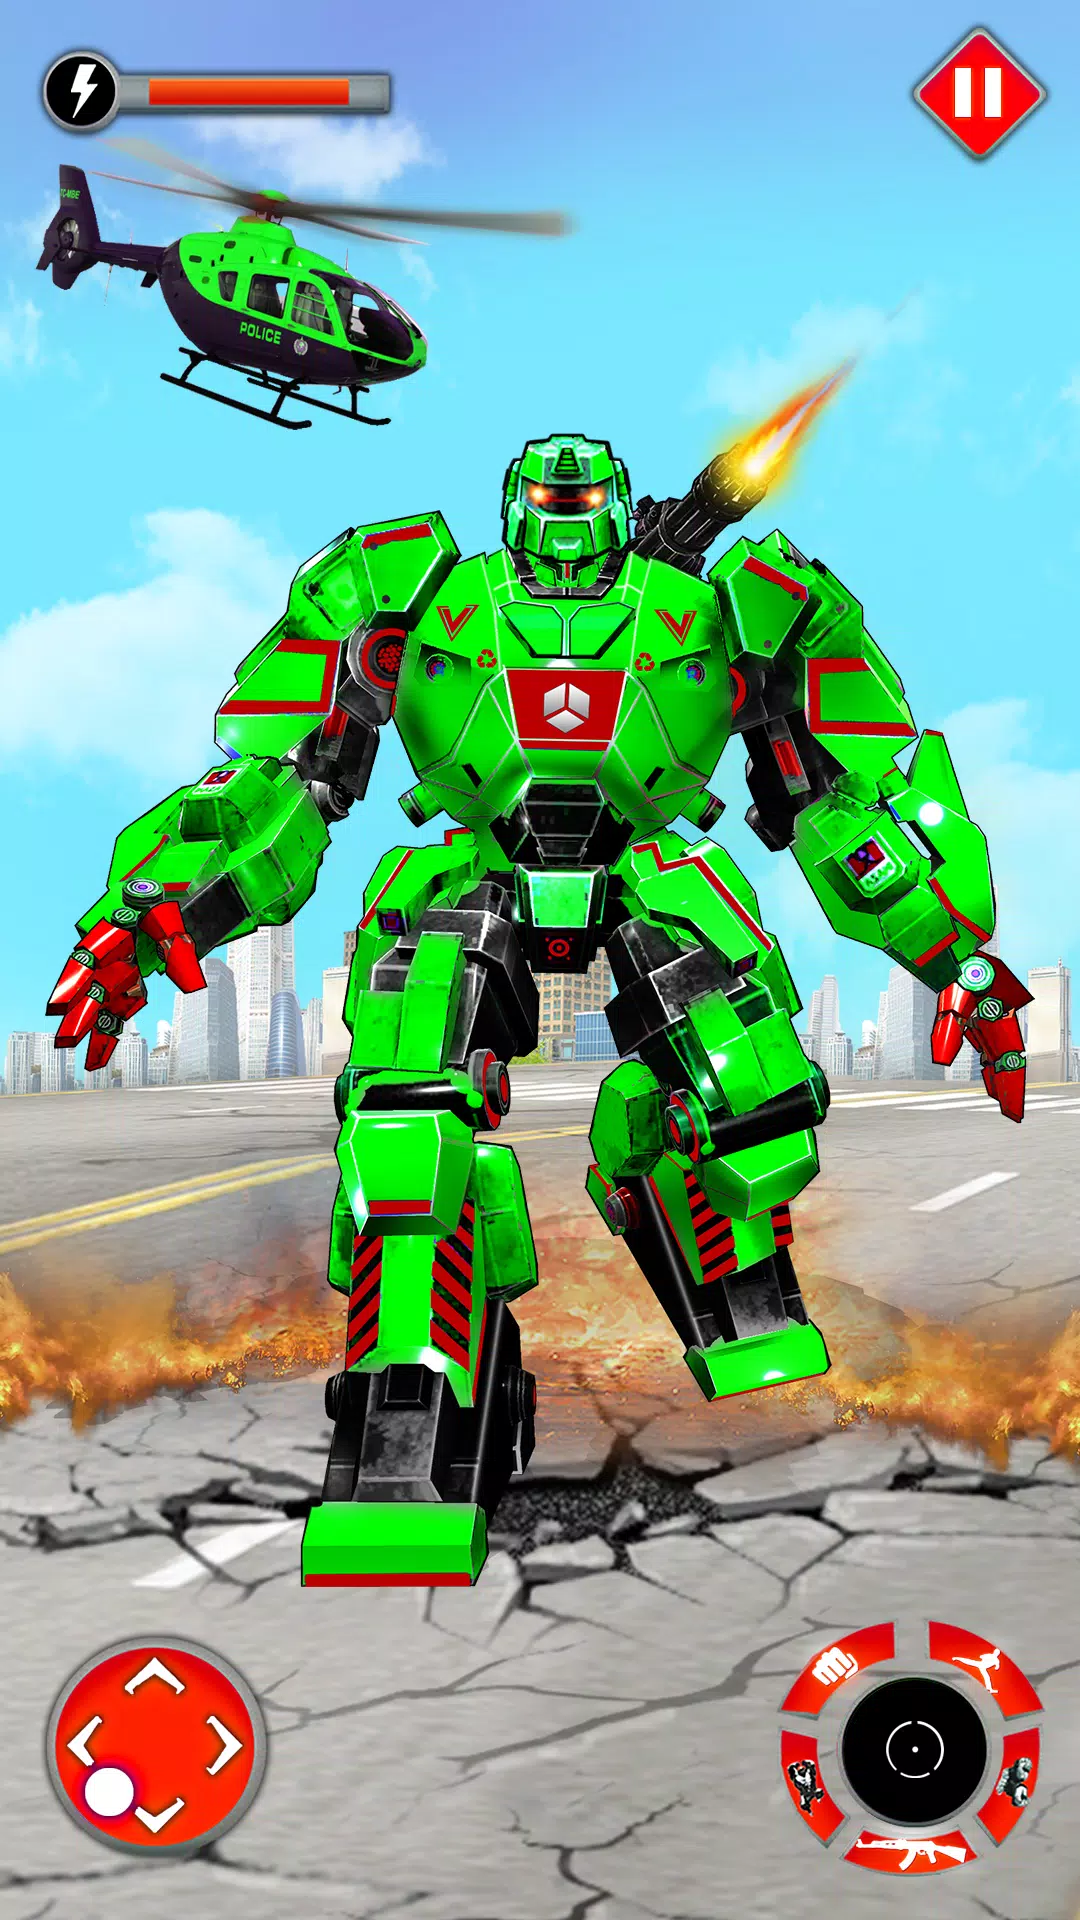 الوحش بطل لعبة سيارة روبوت for Android - APK Download